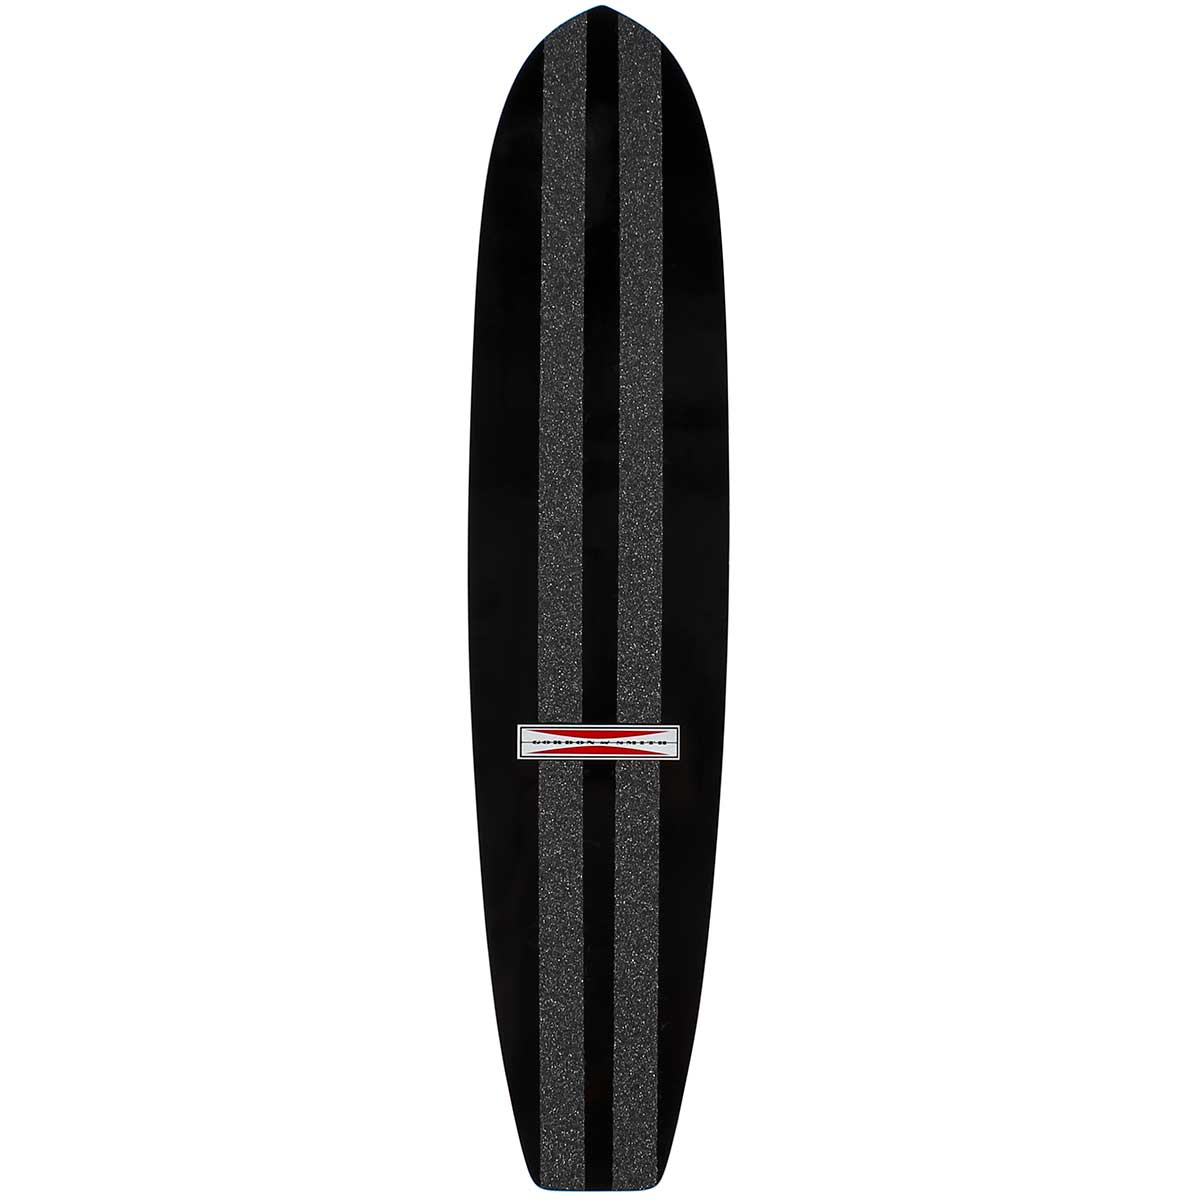 NEW G&S 28" SurfSkate Complete with New Neil Blender Trucks - Black